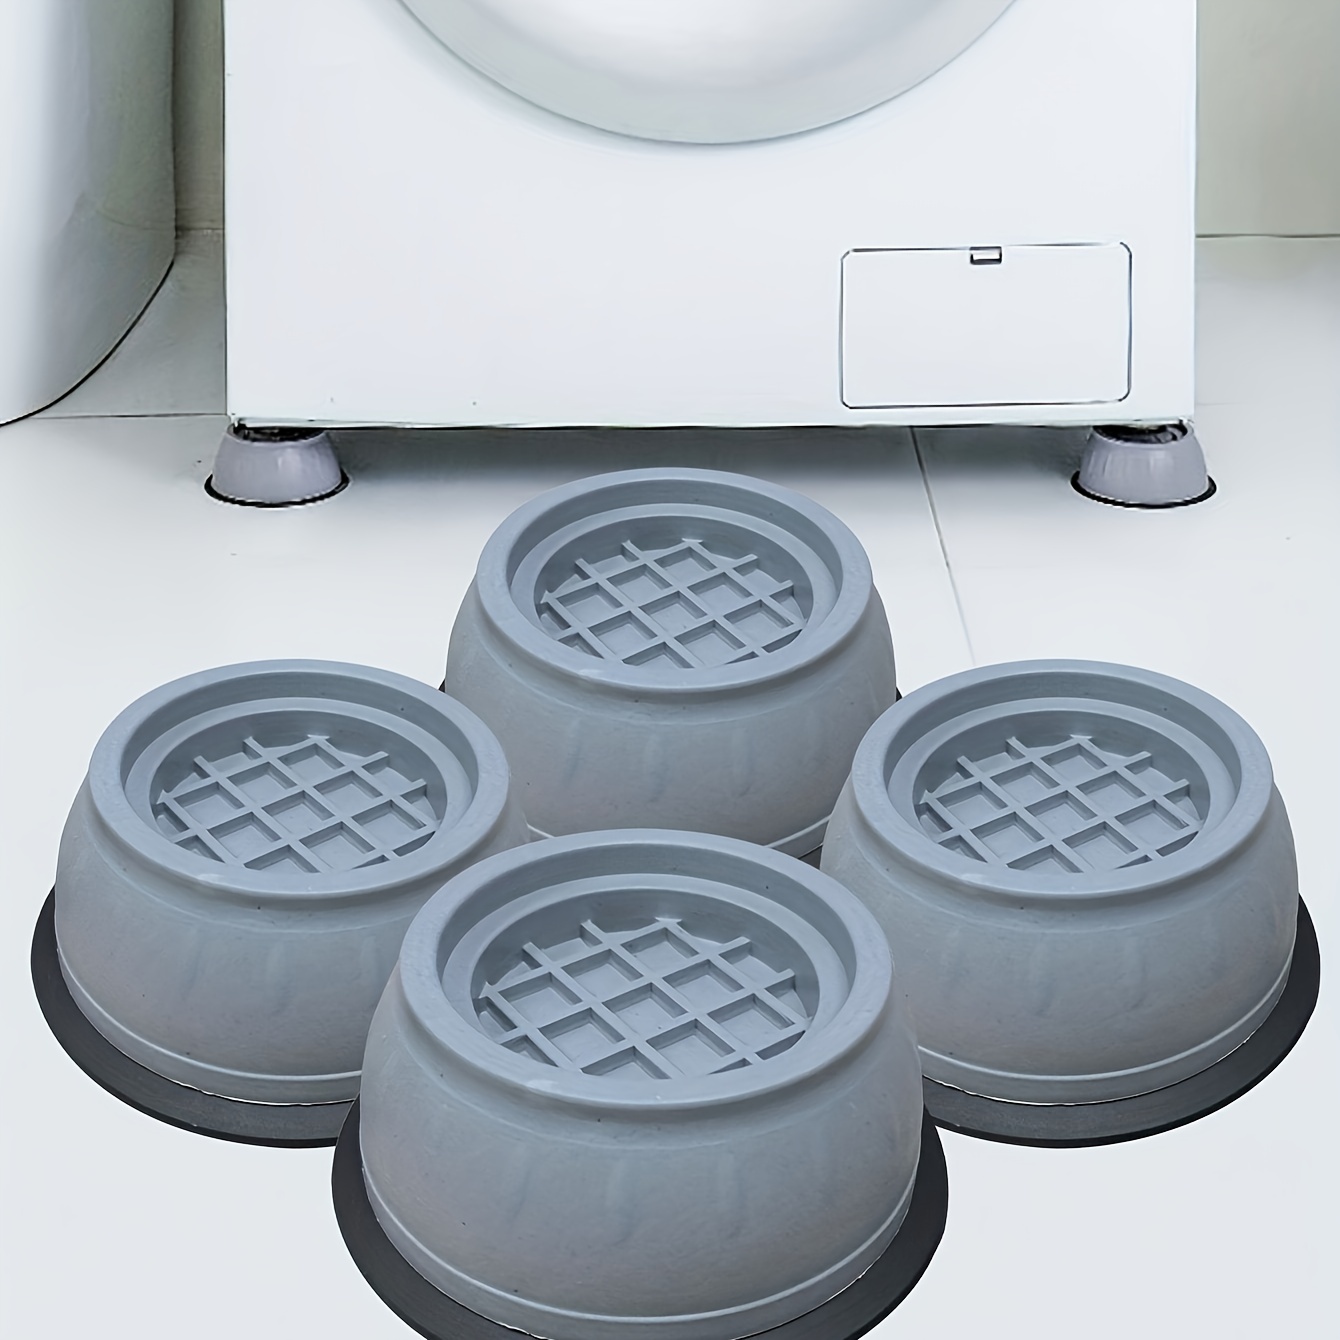 Kaufe 4 Stück Anti-Vibrations-Fußpolster für Waschmaschine